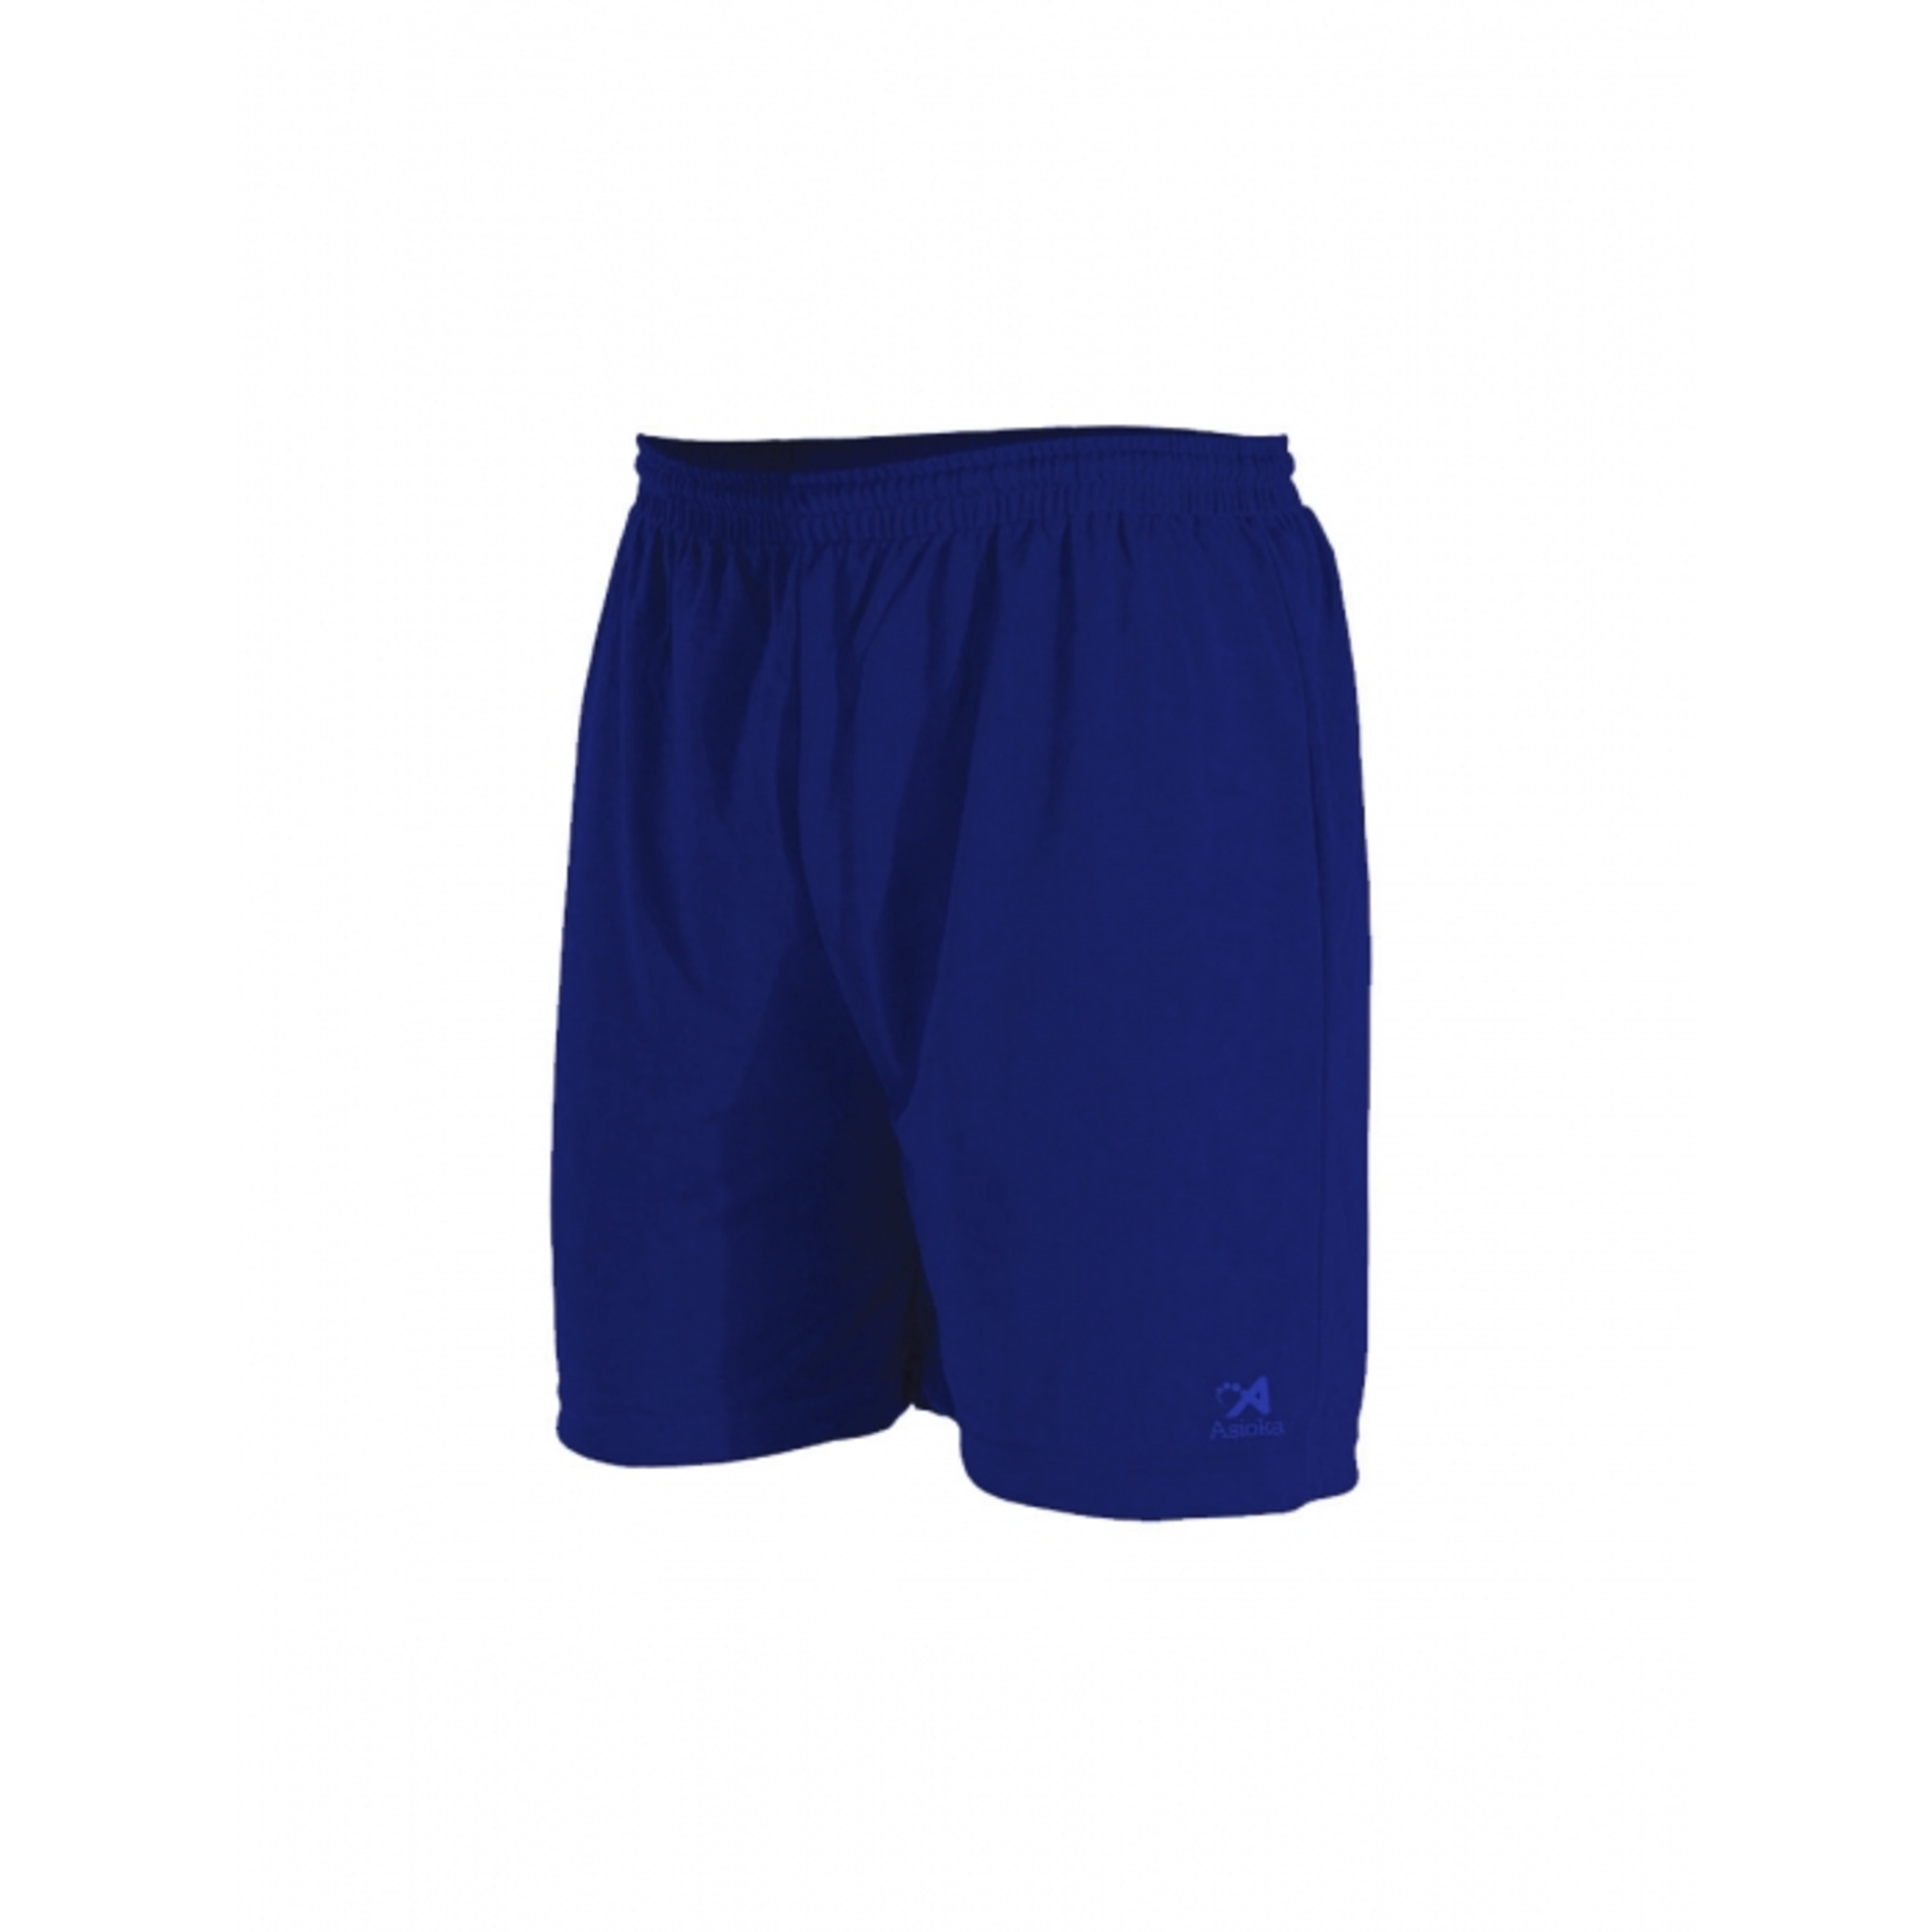 Pantalón Corto Modelo Premium Asioka - azul_marino - Pantalón Corto Futbol  MKP